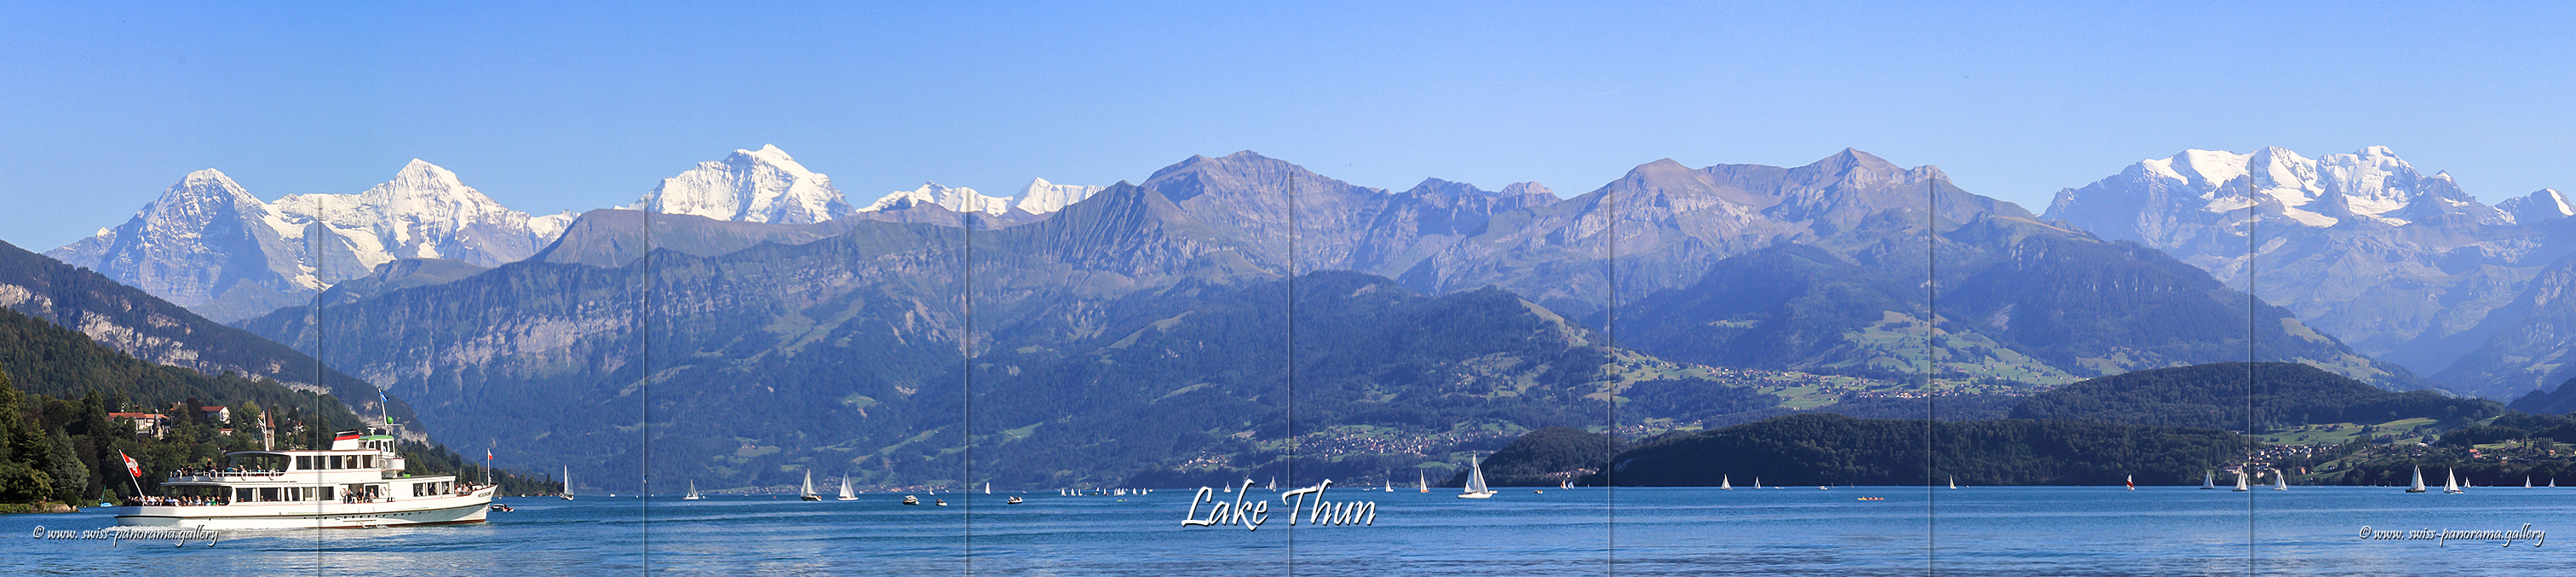 Swiss panorama gallery Furka pass panoramiv view